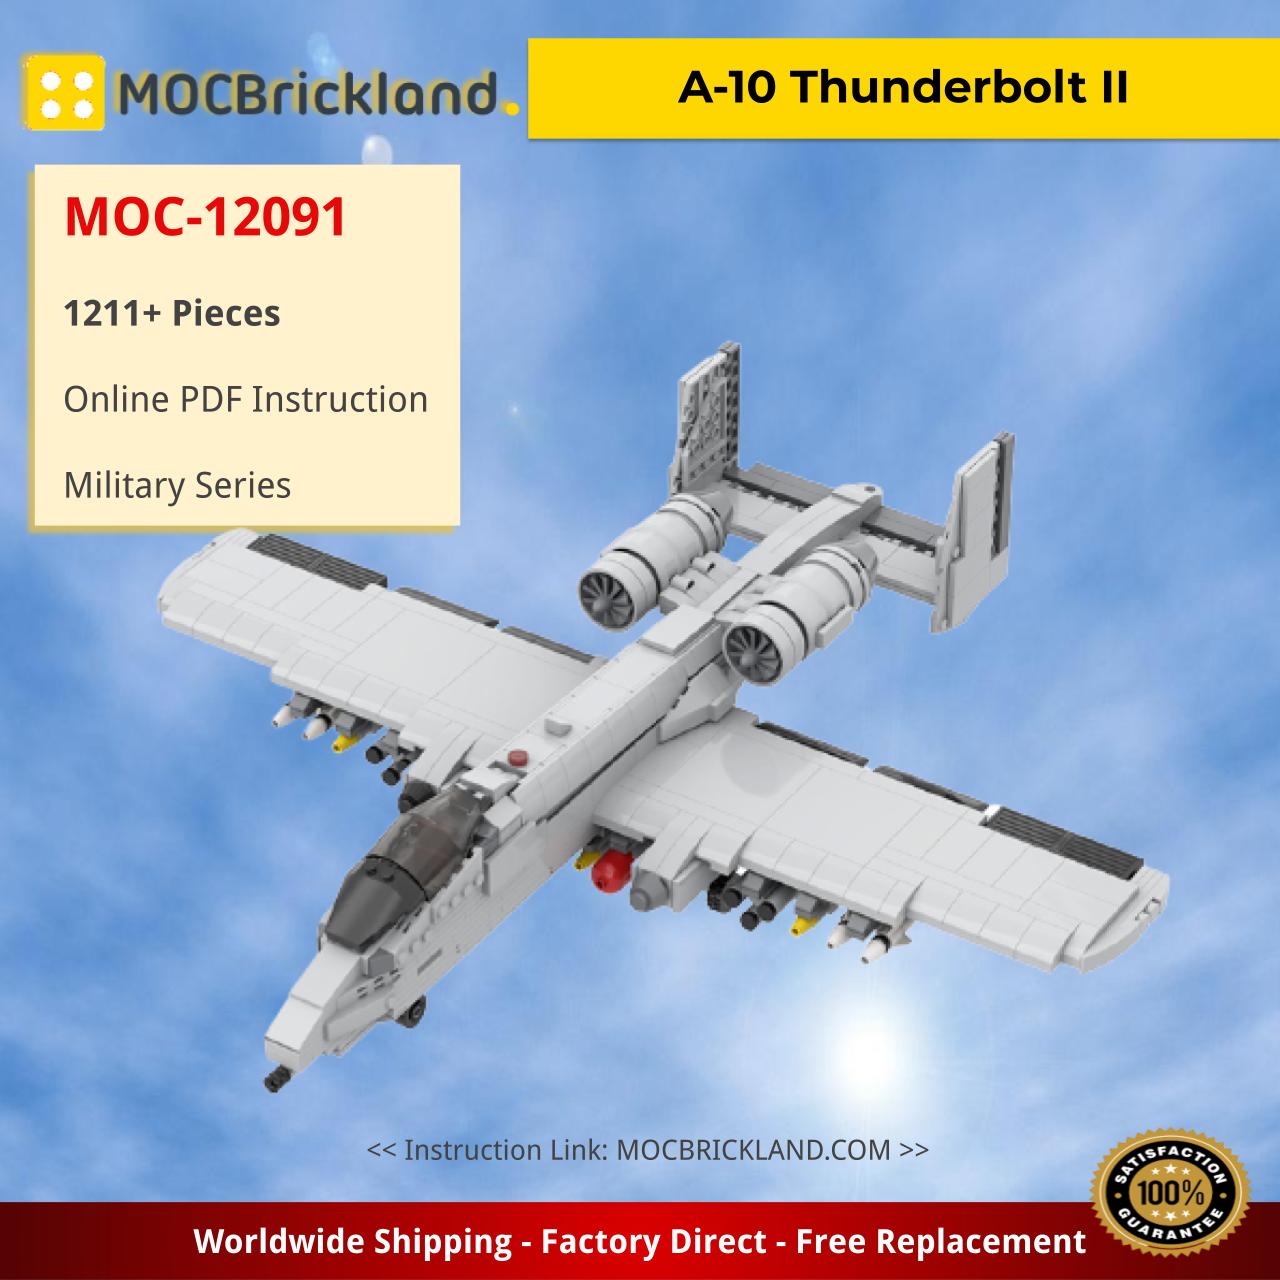 MOCBRICKLAND MOC-12091 A-10 Thunderbolt II